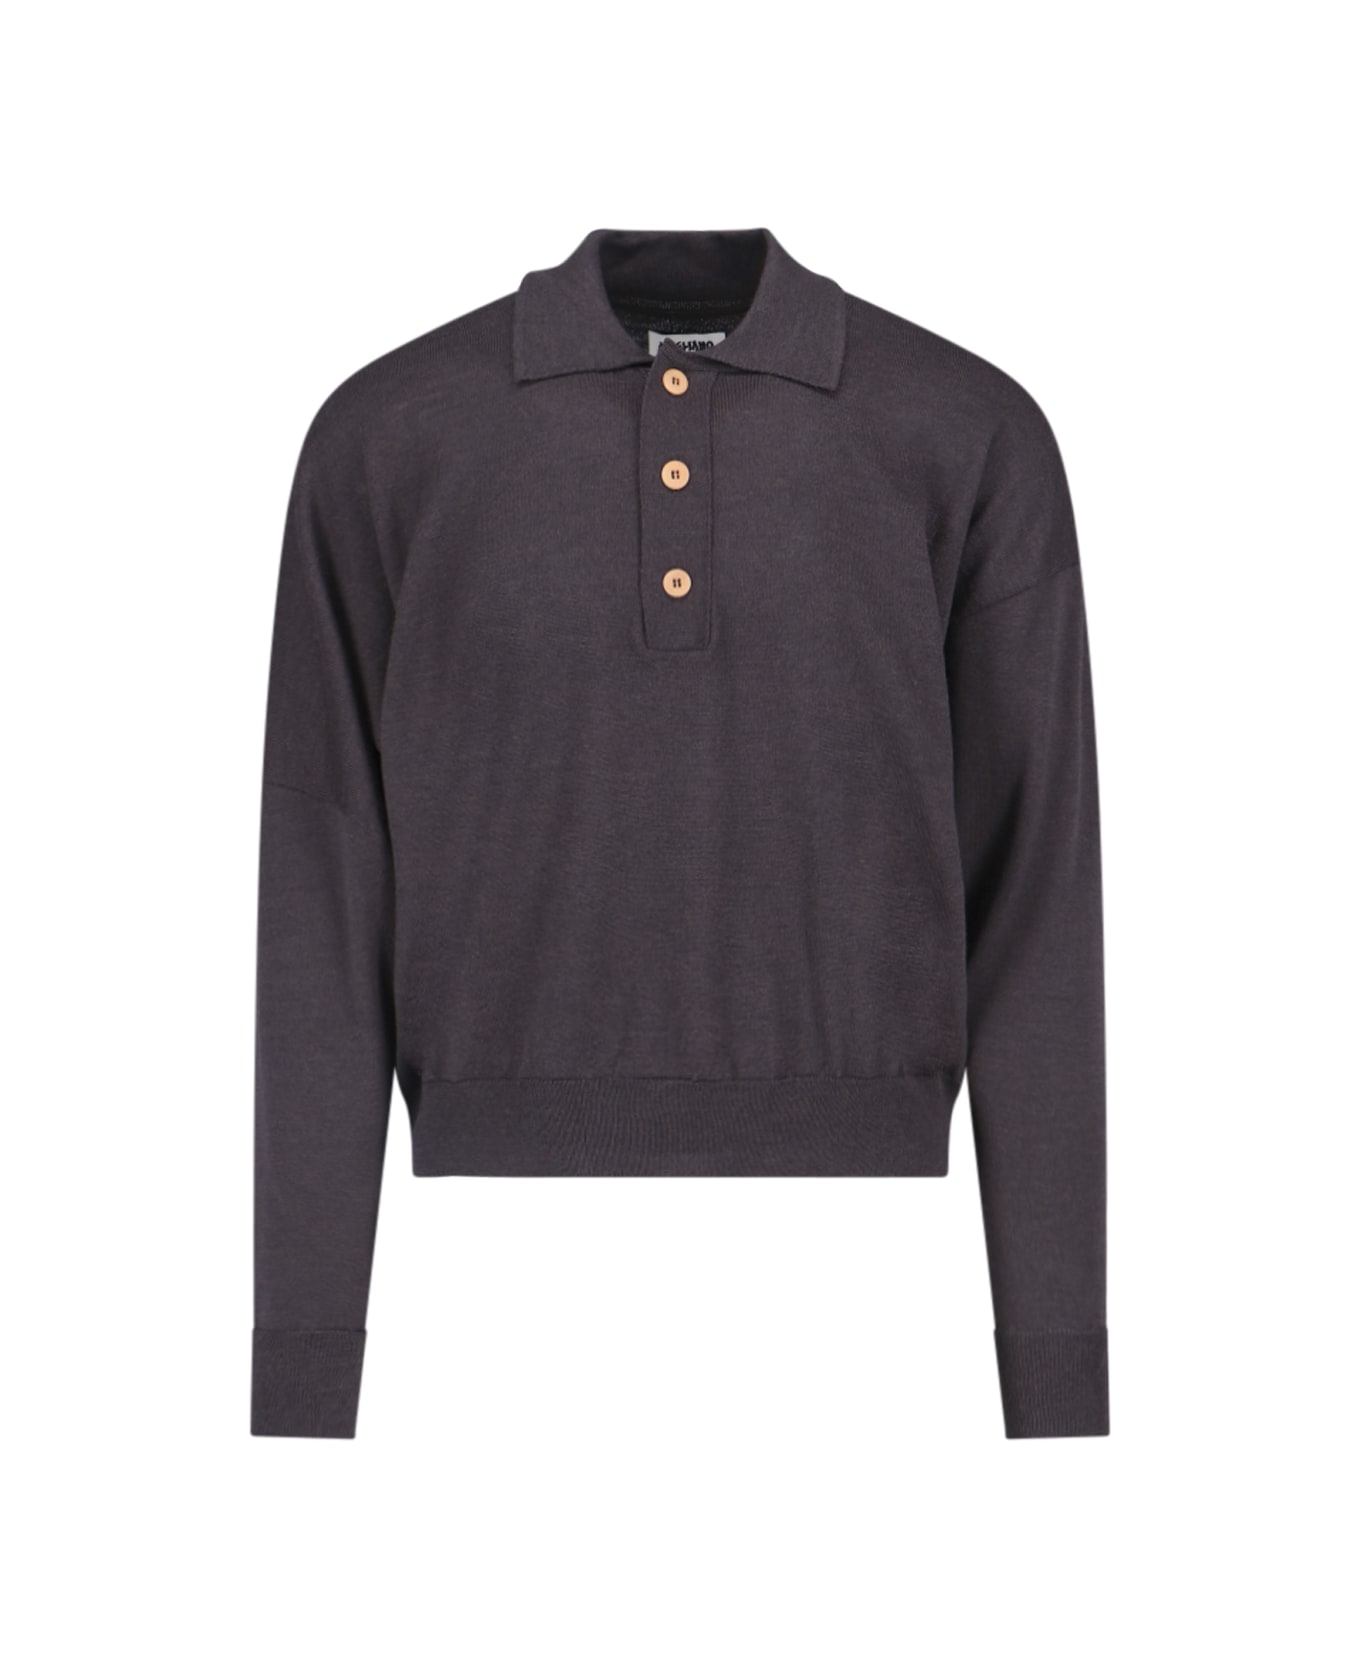 Magliano Polo Sweater - Brown ポロシャツ